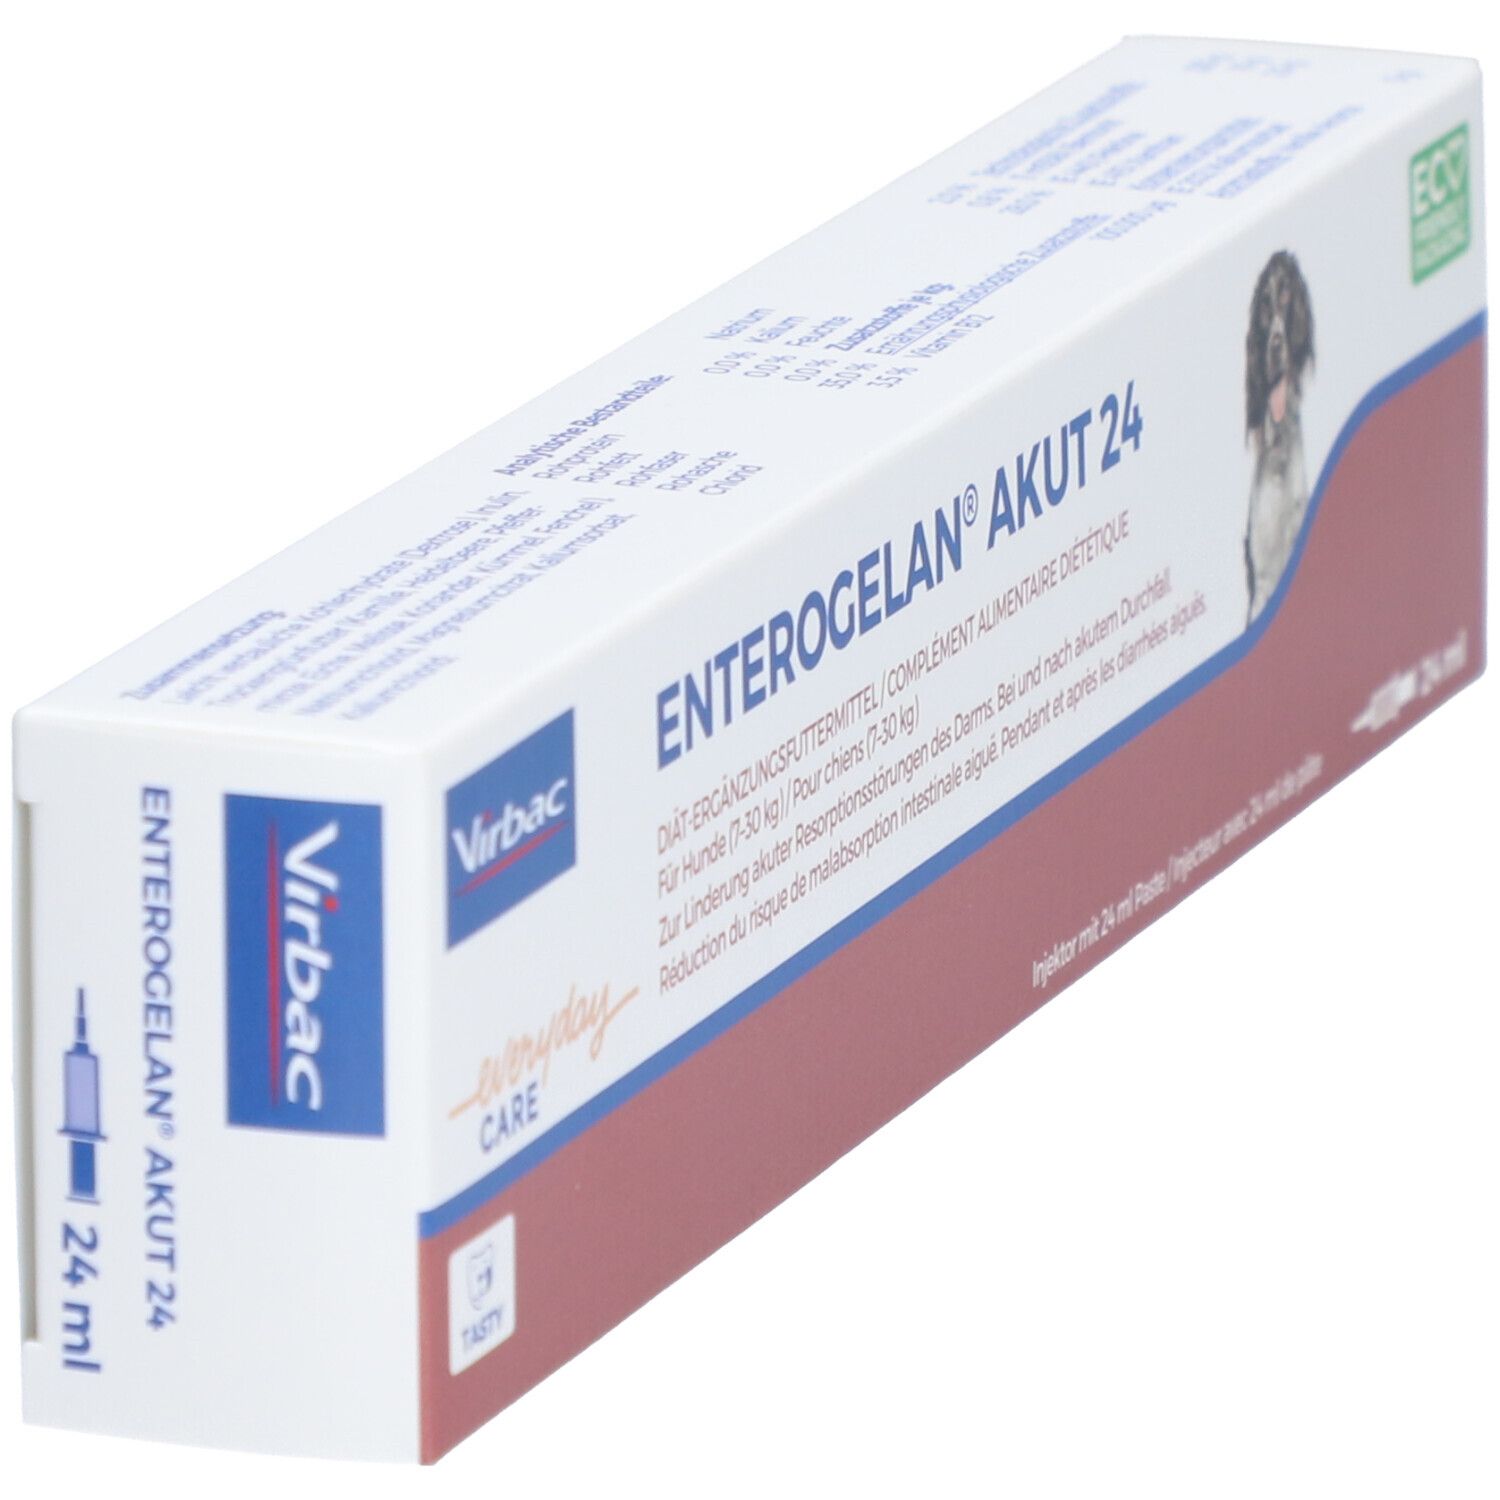 Enterogelan® akut 24